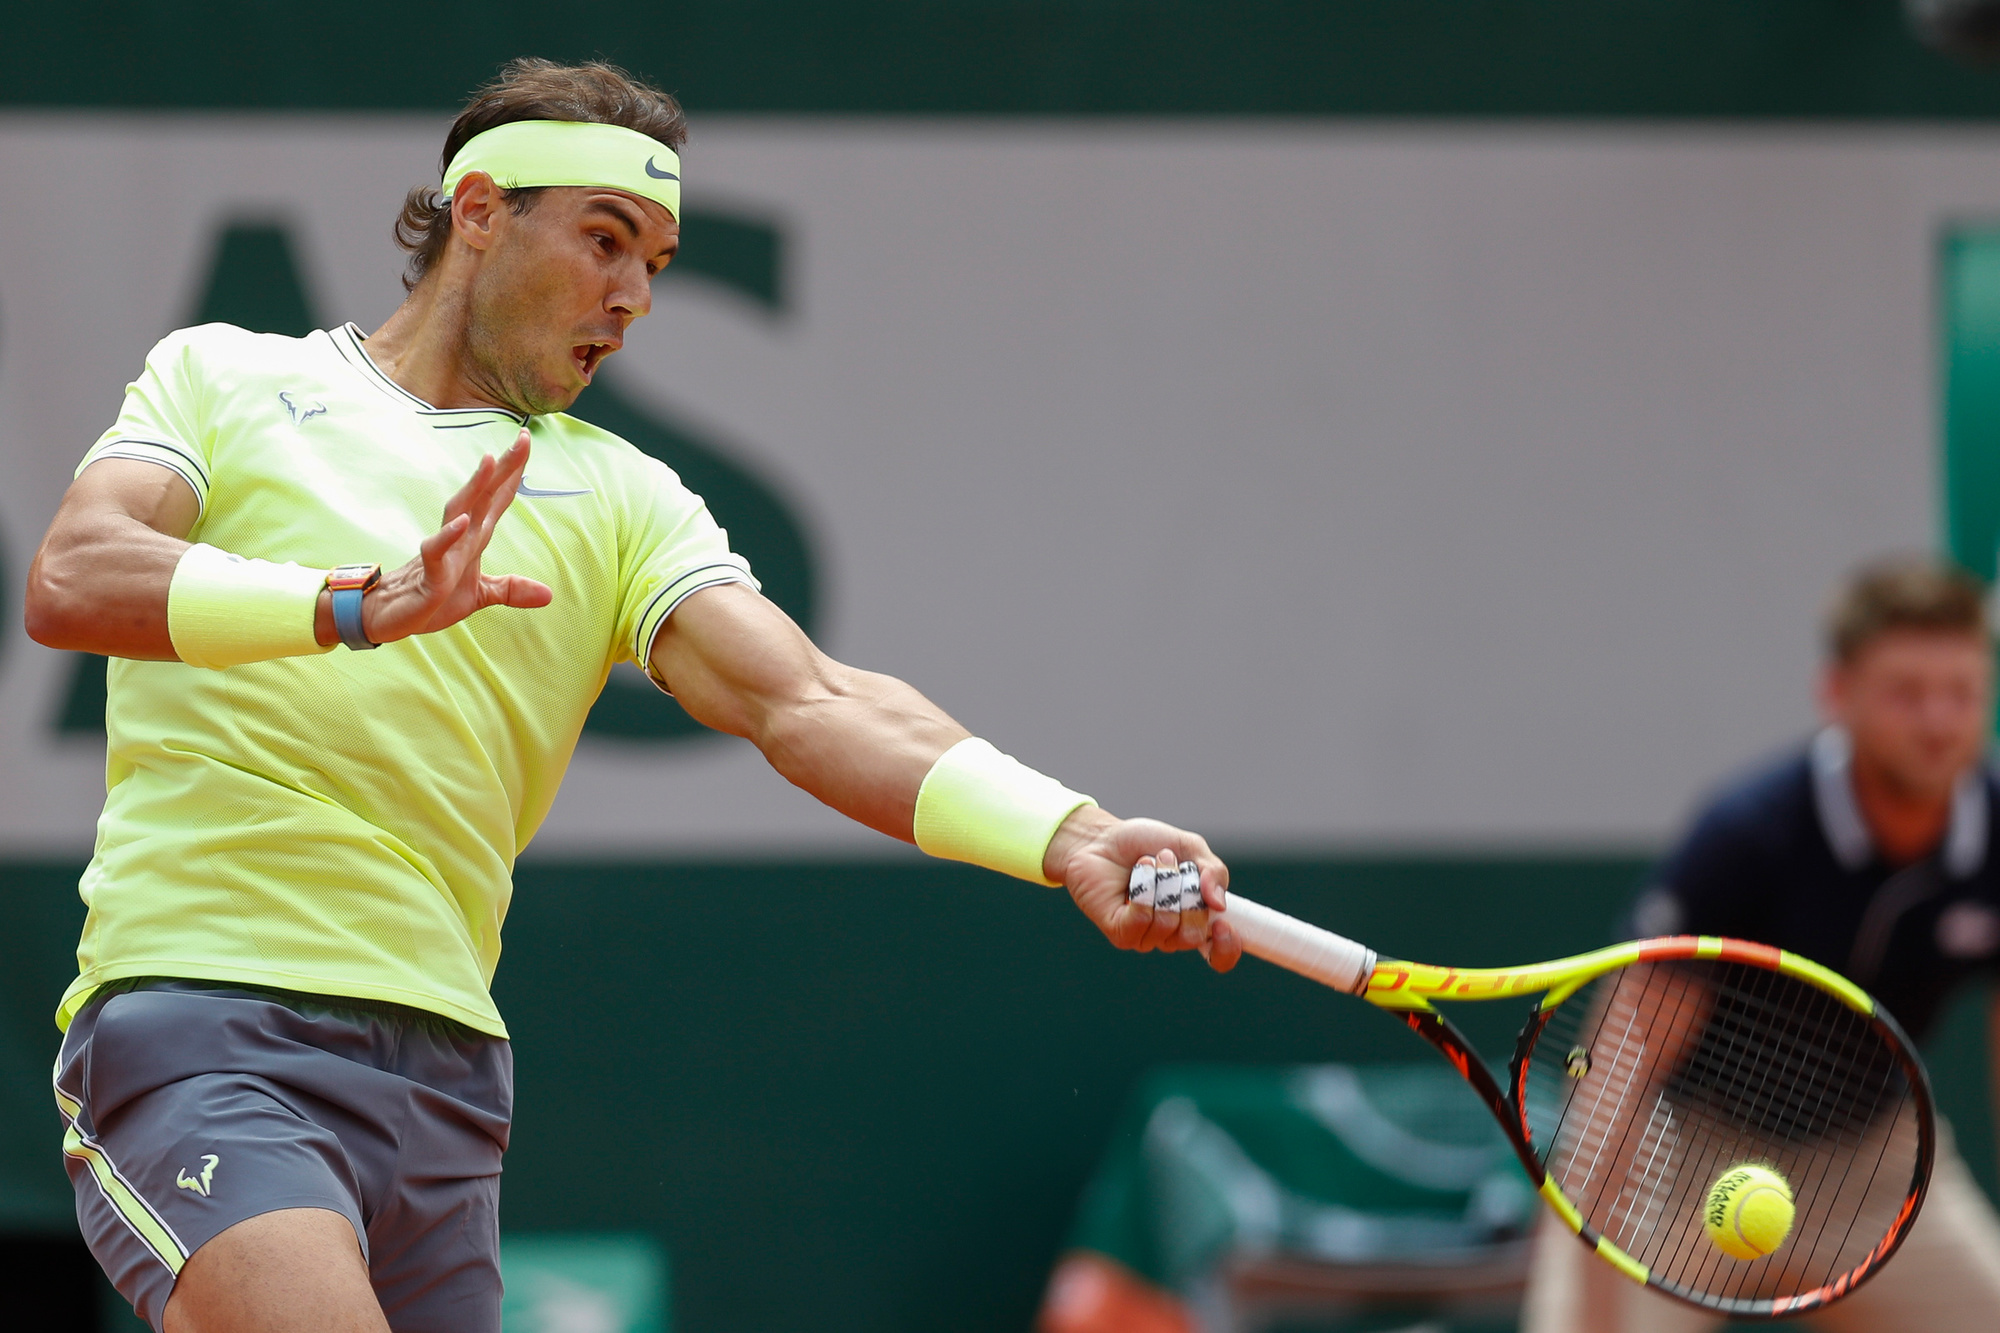 Rafael Nadal zet zoveel kracht en topspin op zijn forehand dat daar geregeld een schouder- of elleboogblessure van komt., Belga Image